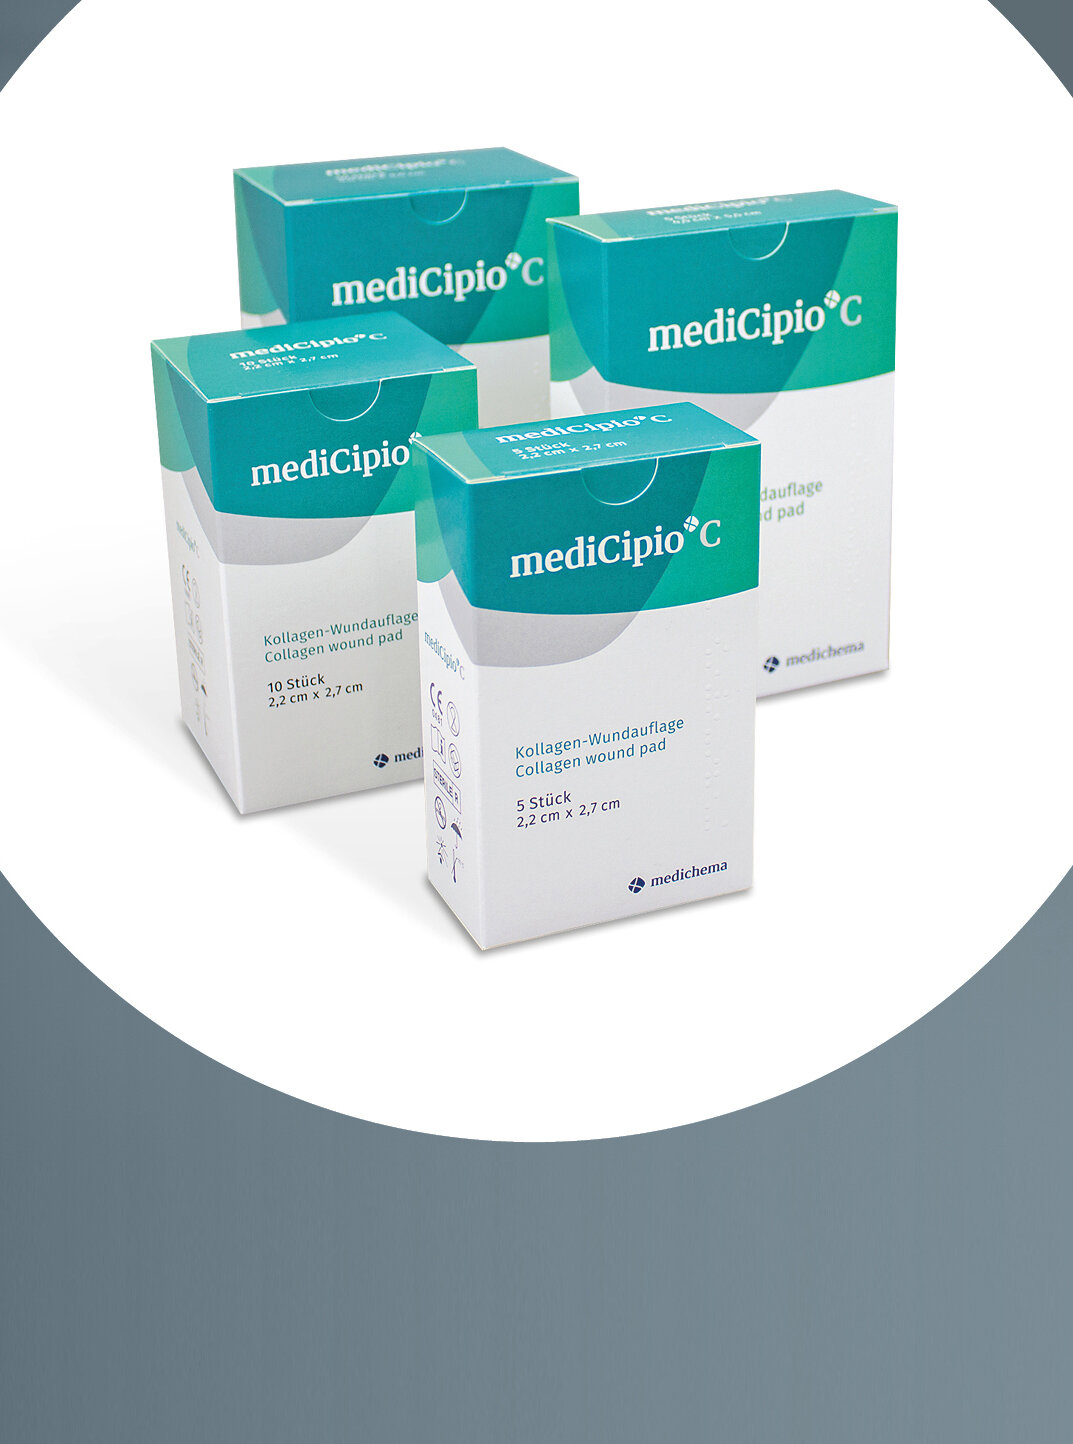 Im Fokus vier verschiedene Verpackungsgrößen des Produktes mediCipio® C von medichema, stehend als Gruppe.